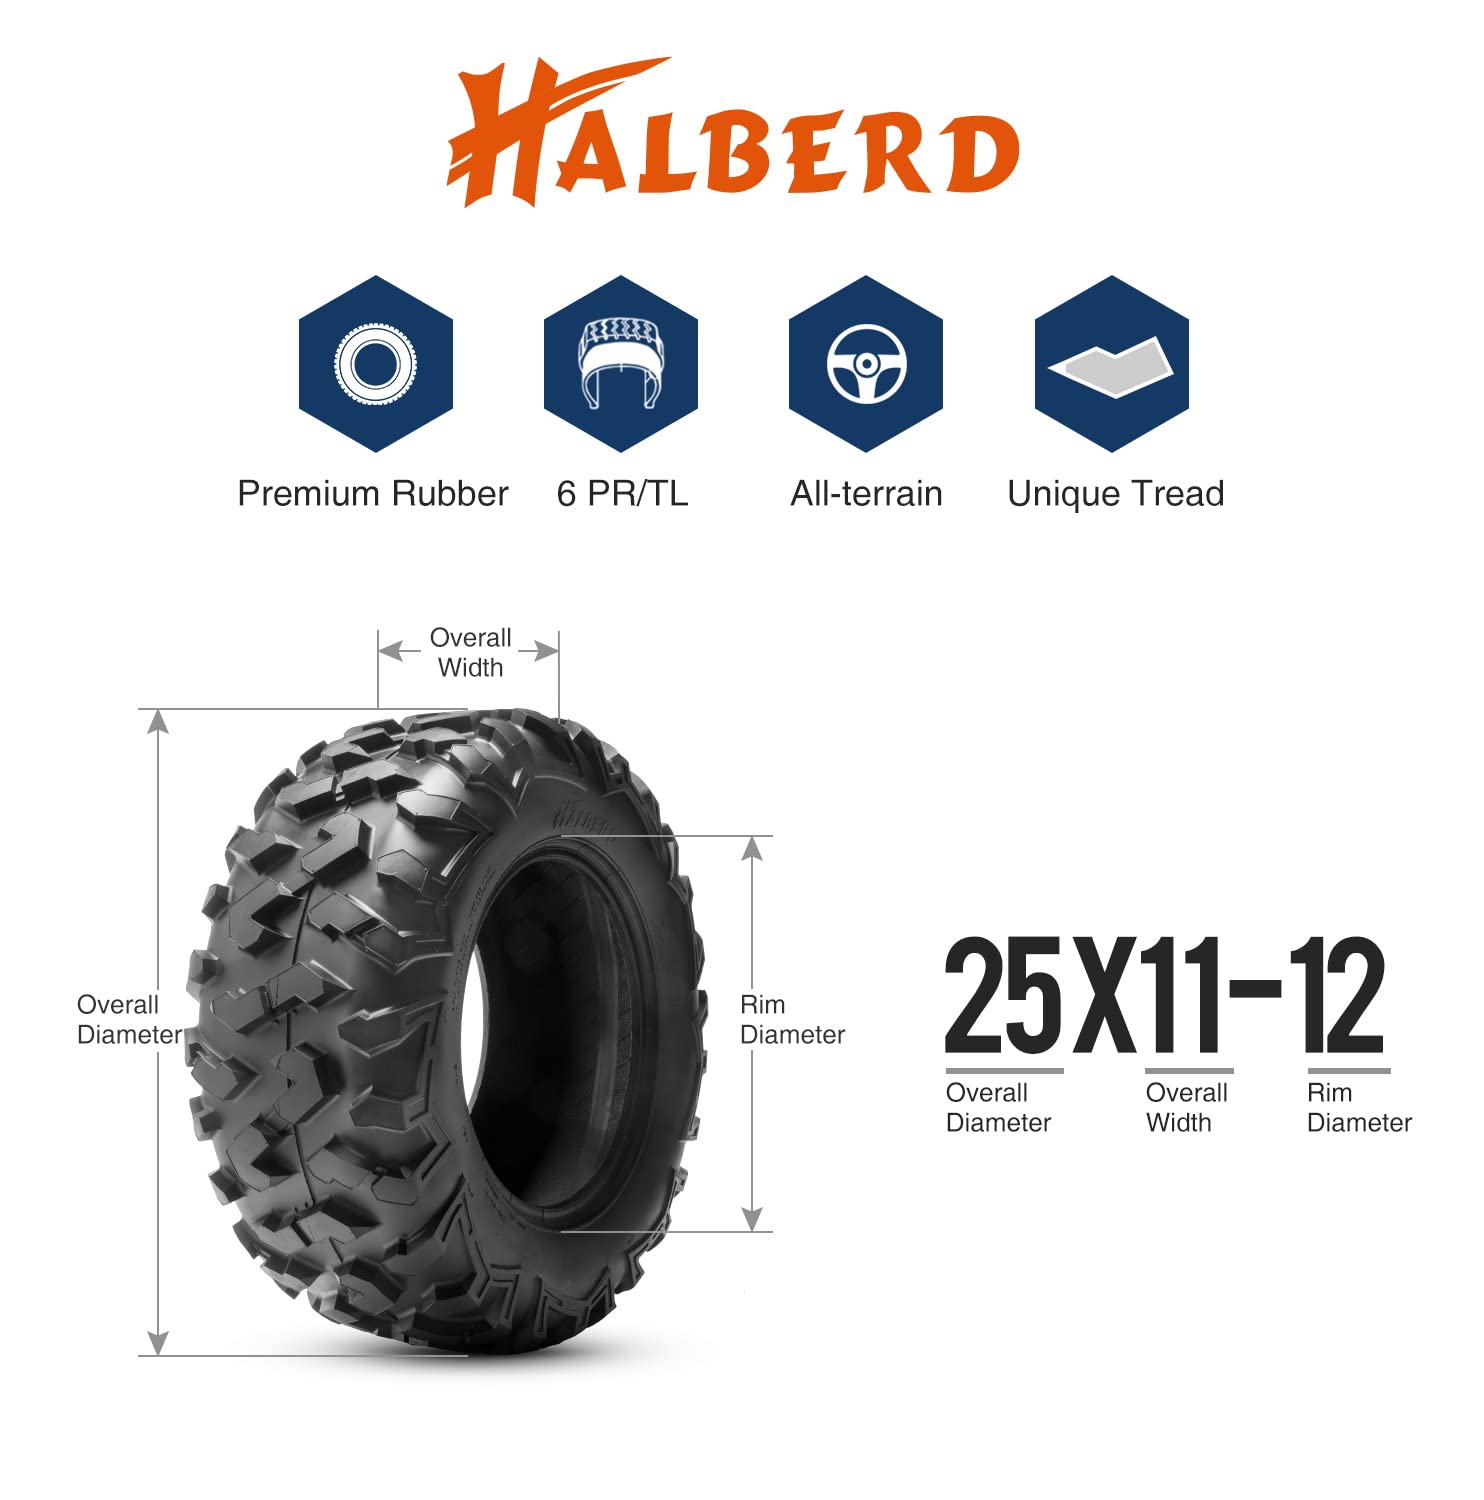 Halberd HU01 25x11-12 ATV Tires Set of 2